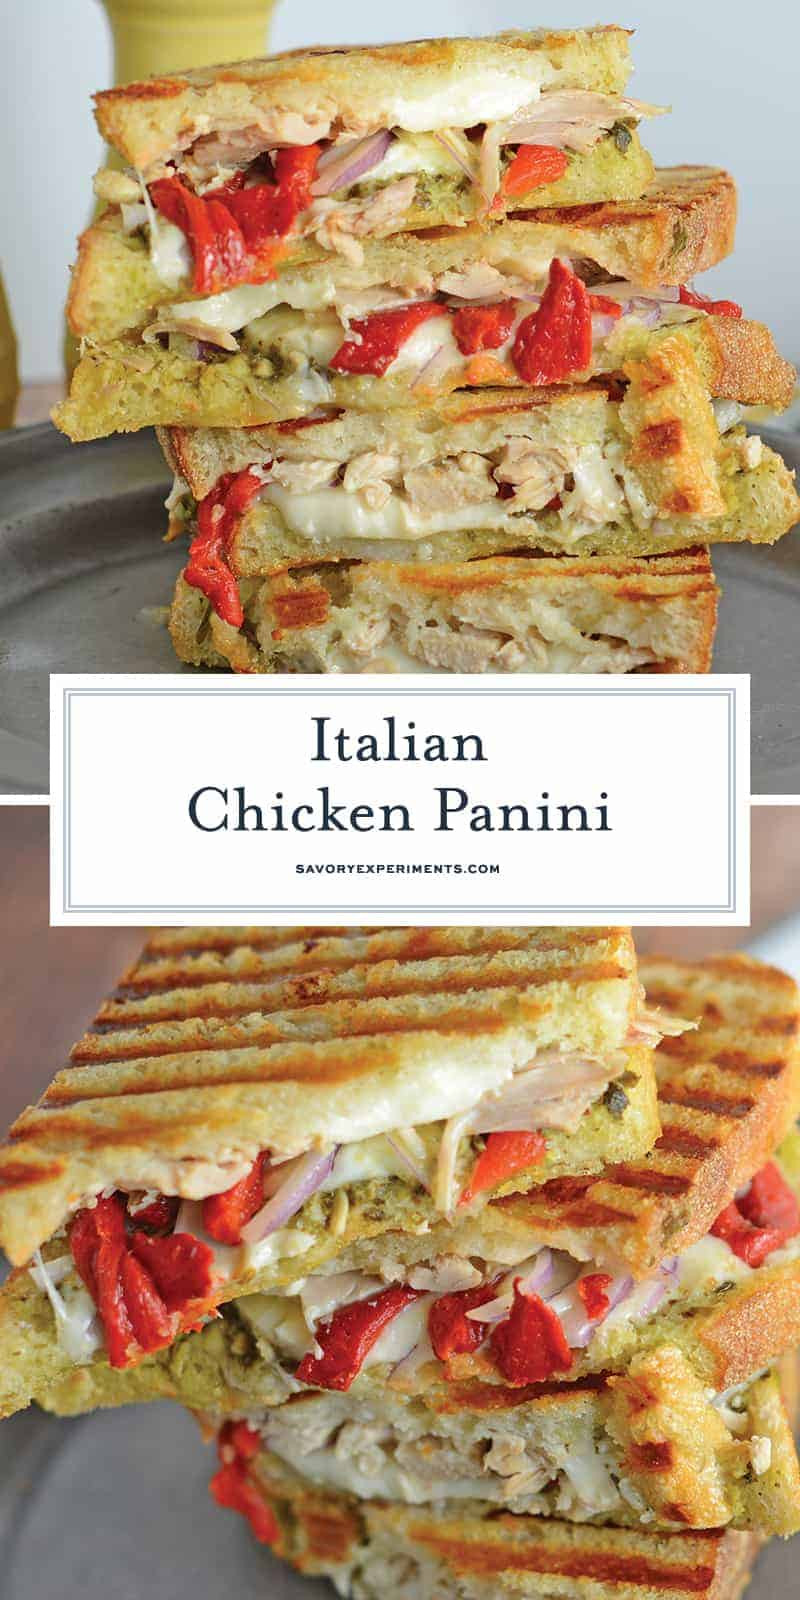 Recipes For Panini Sandwiches
 Italian Chicken Panini The Best Chicken Panini Sandwich